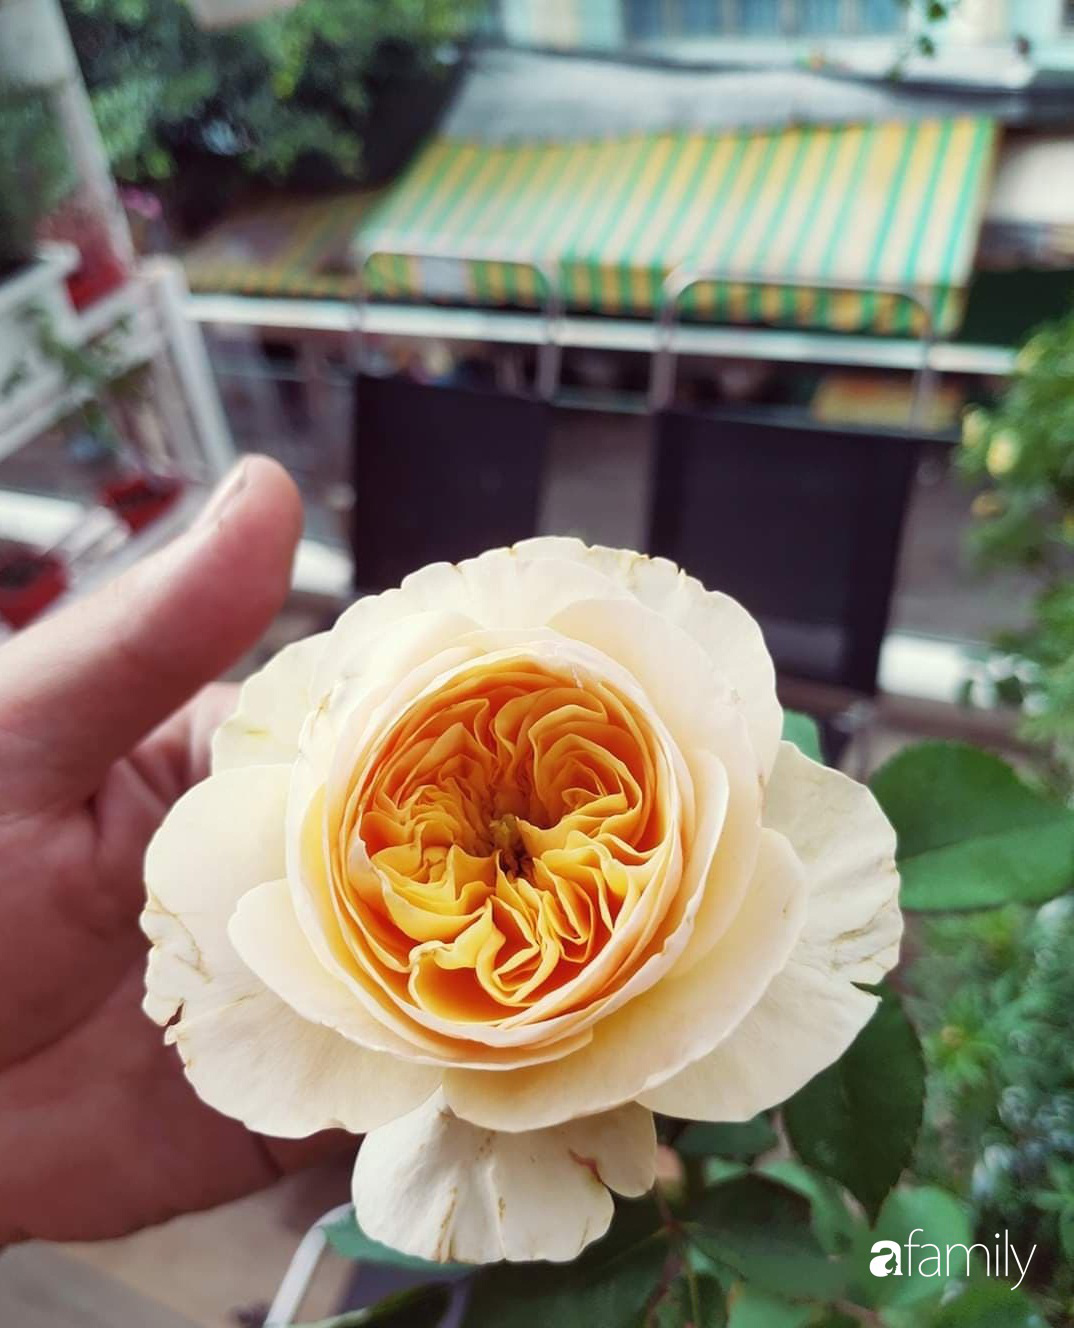 Ngôi nhà đẹp yên bình và lãng mạn nhờ người đàn ông đảm đang tự decor vườn và trồng đủ loại hồng ở Sài Gòn - Ảnh 19.